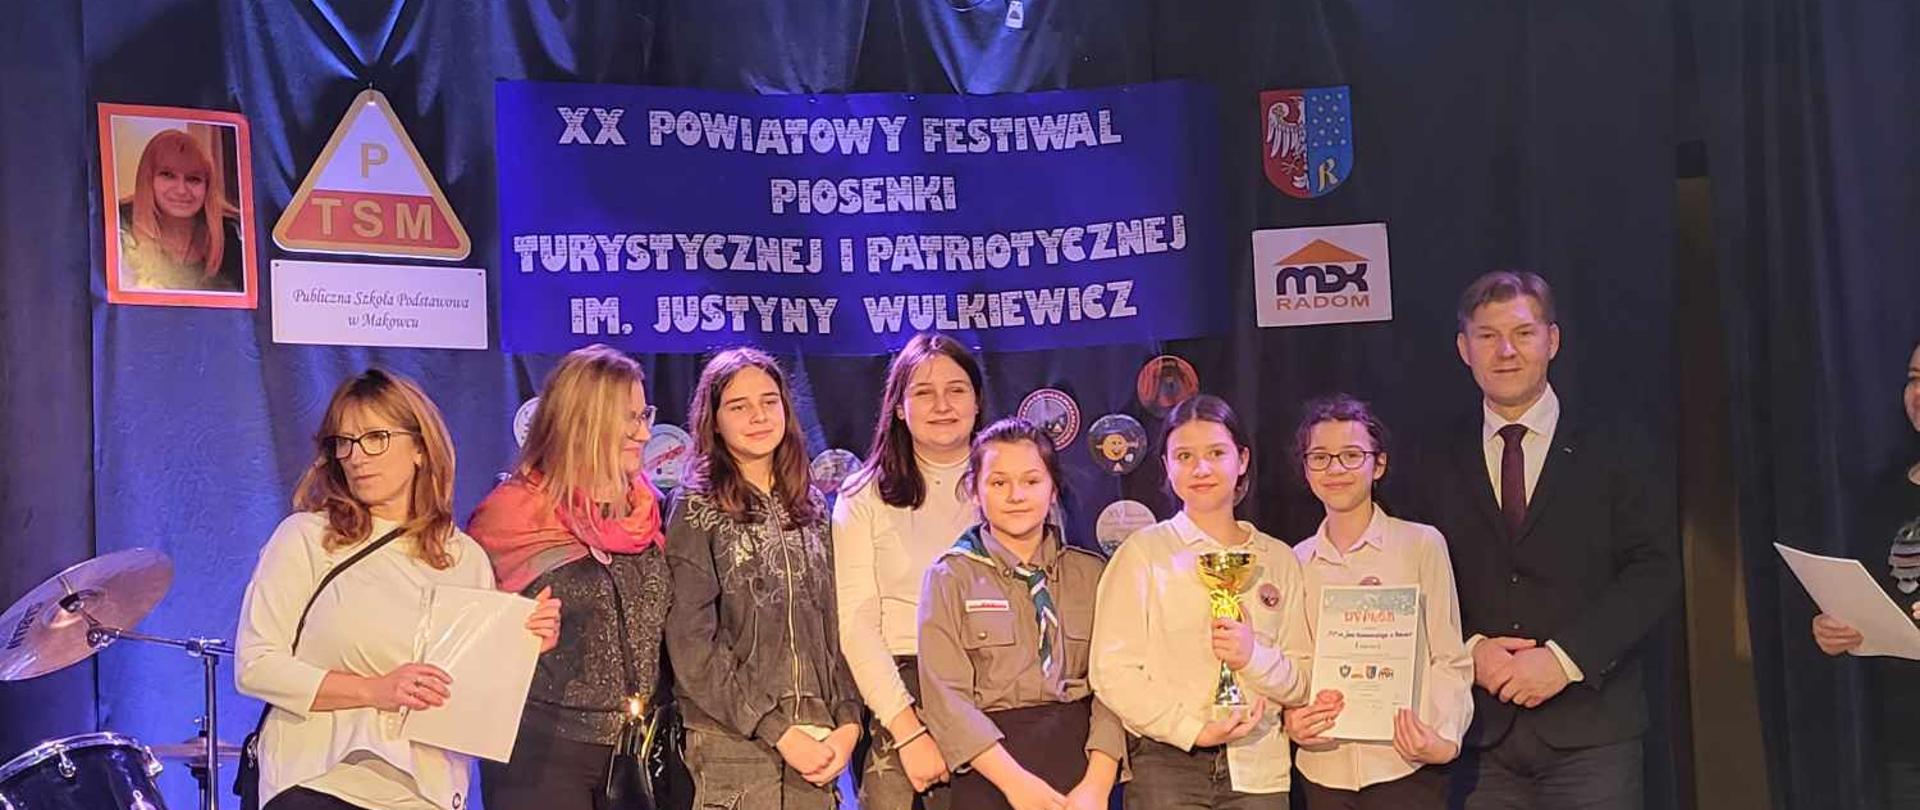 XX Powiatowy Festiwal Piosenki Turystycznej i Patriotycznej
im. Justyny Wulkiewicz